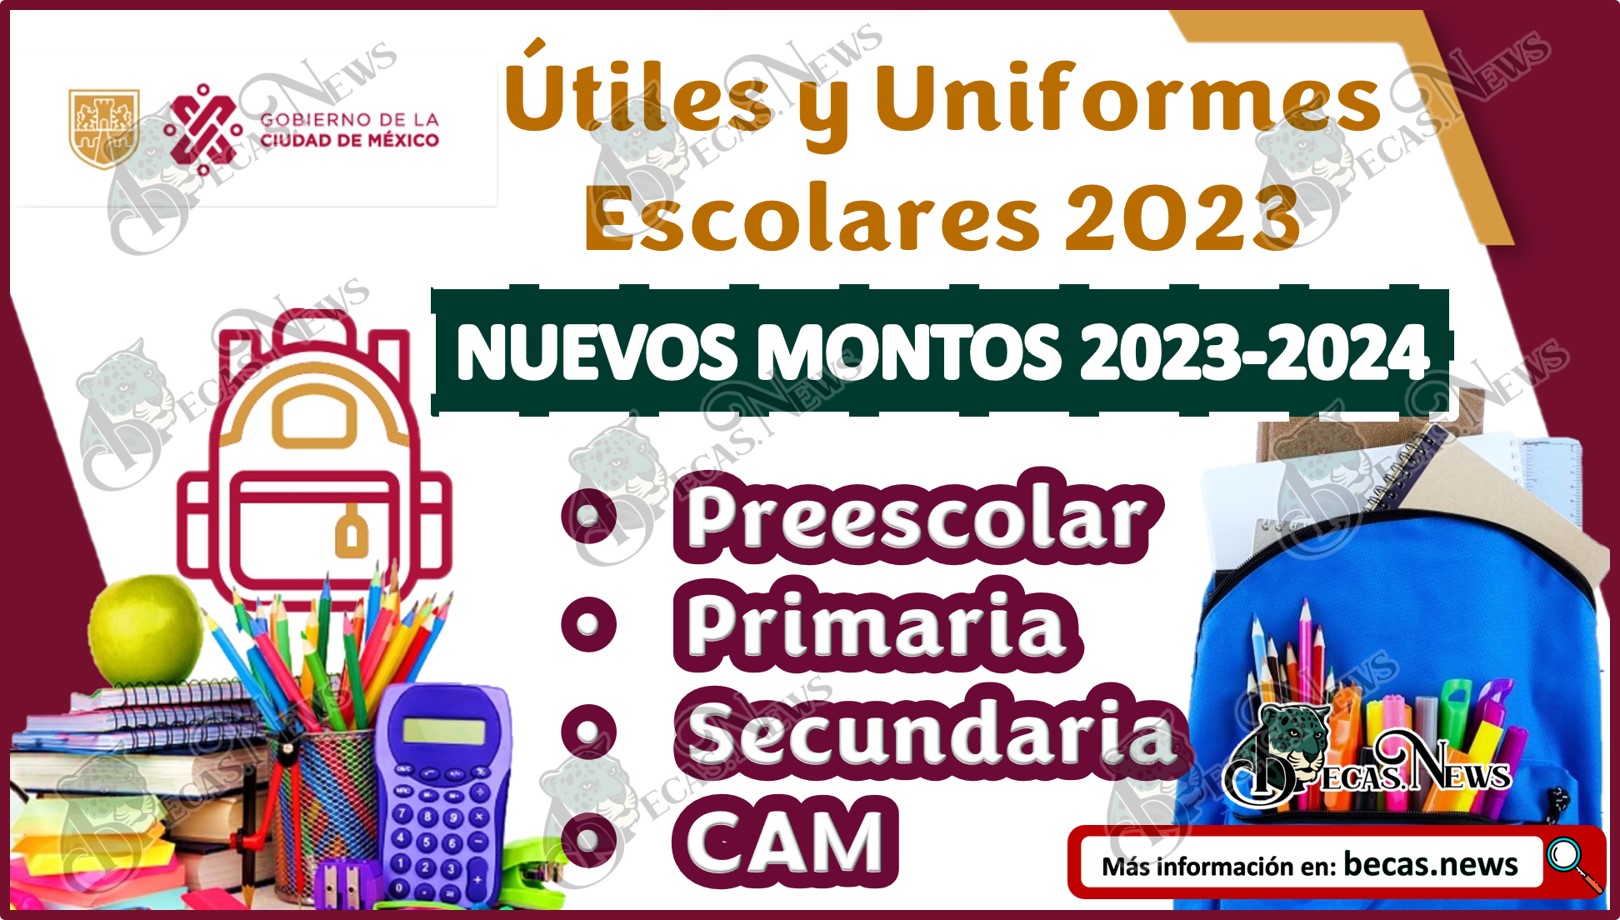 Útiles y Uniformes Escolares 2023| Nuevos Montos que otorga el programa del ciclo escolar 2023-2024